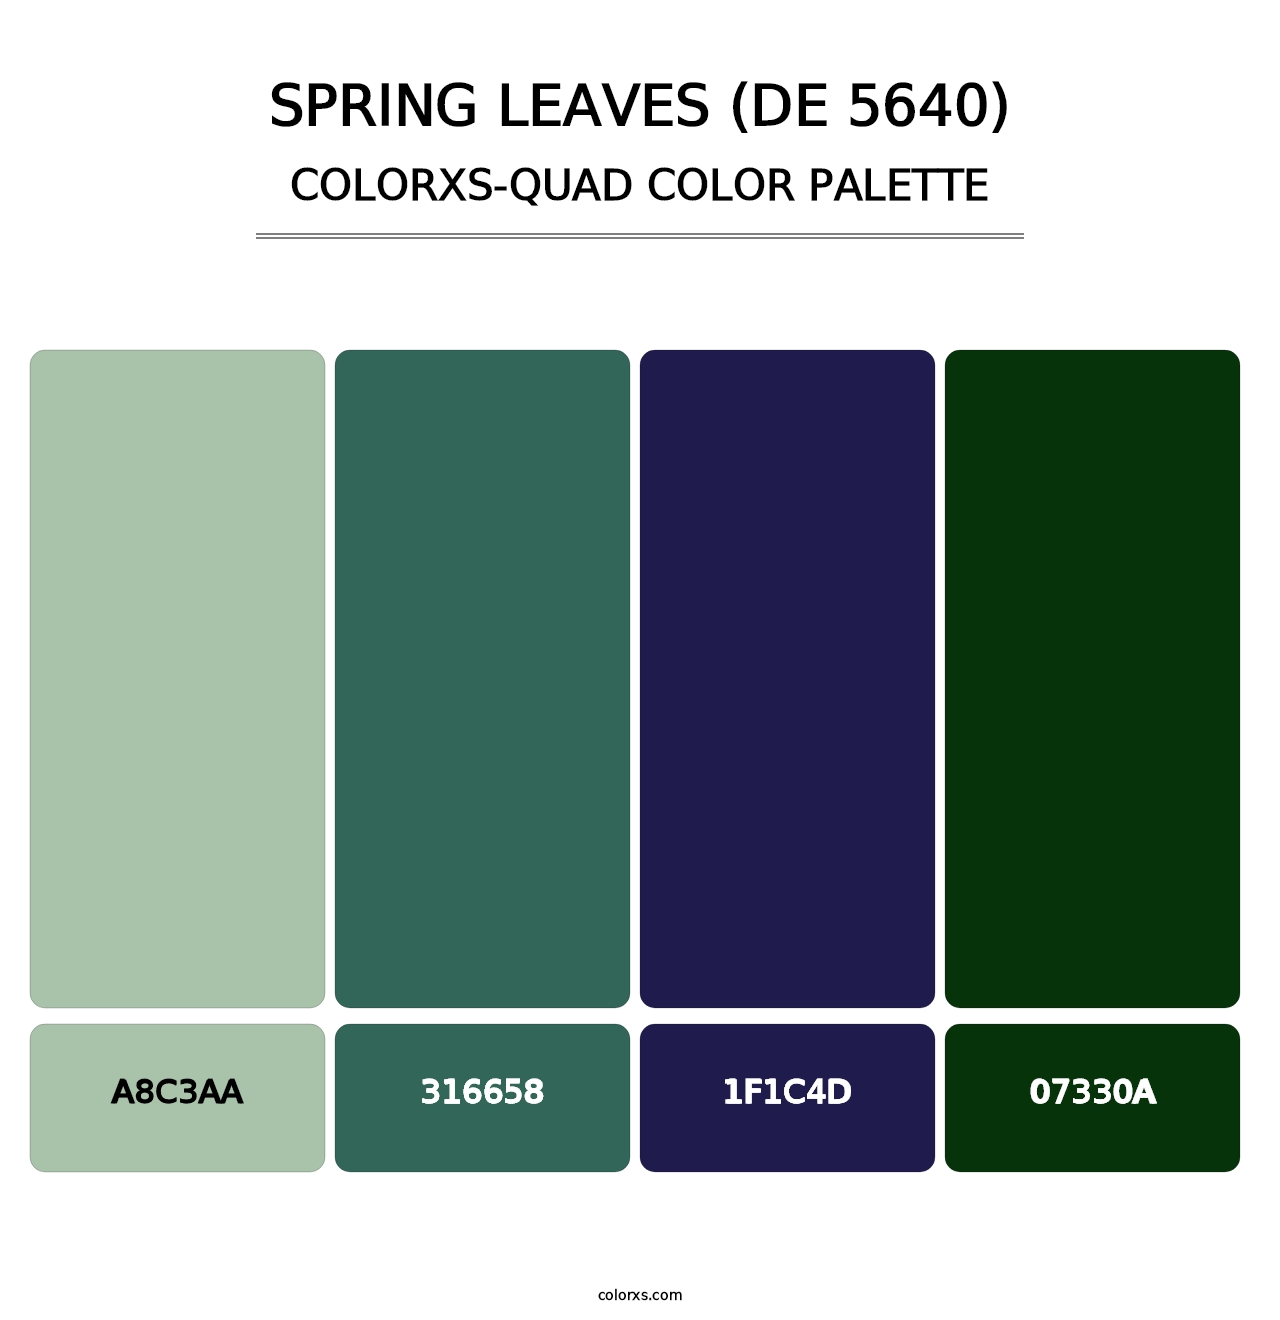 Spring Leaves (DE 5640) - Colorxs Quad Palette